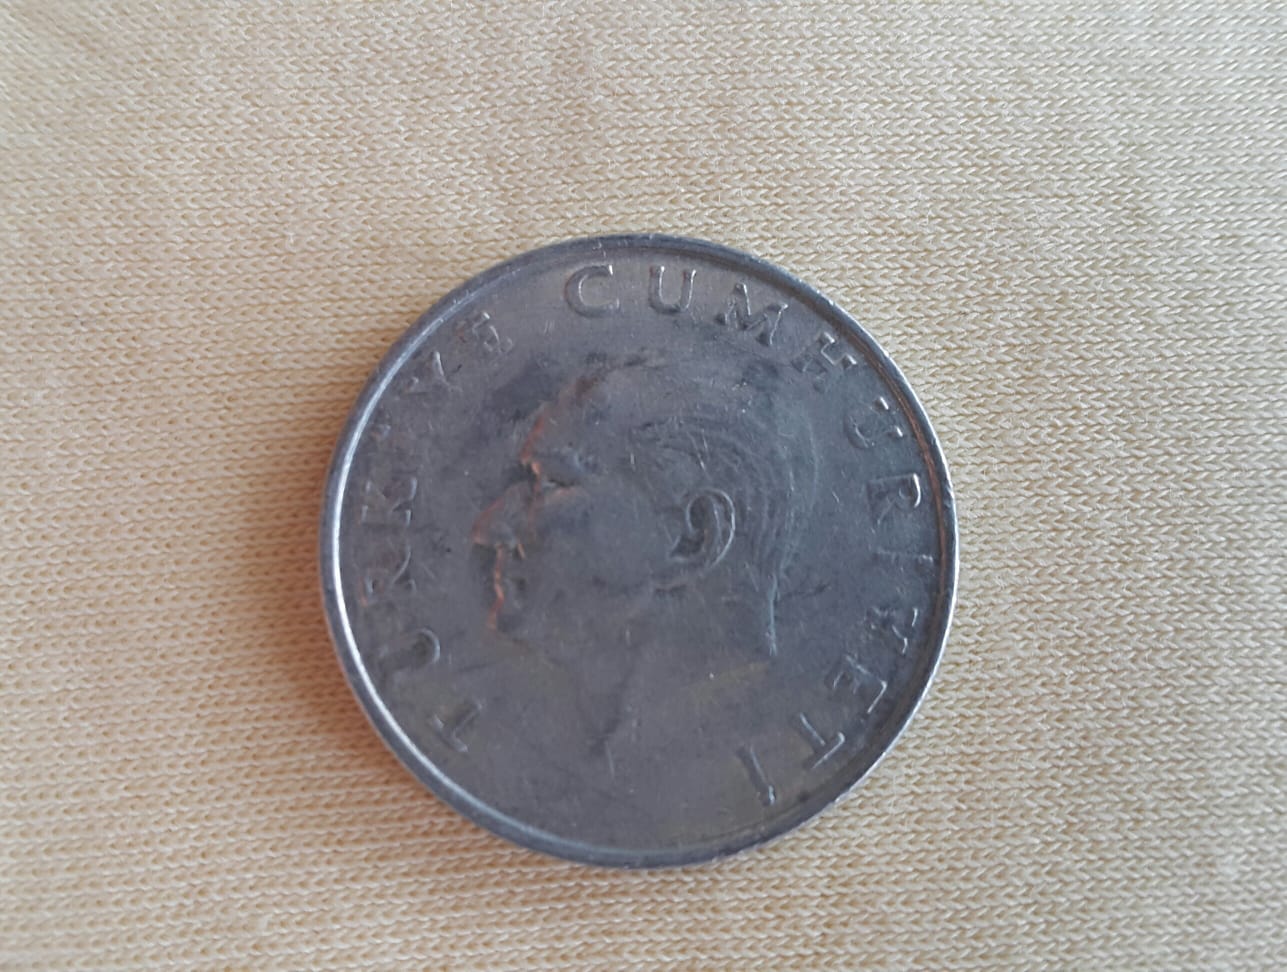 1985 yılı alüminyum 25 lira çil